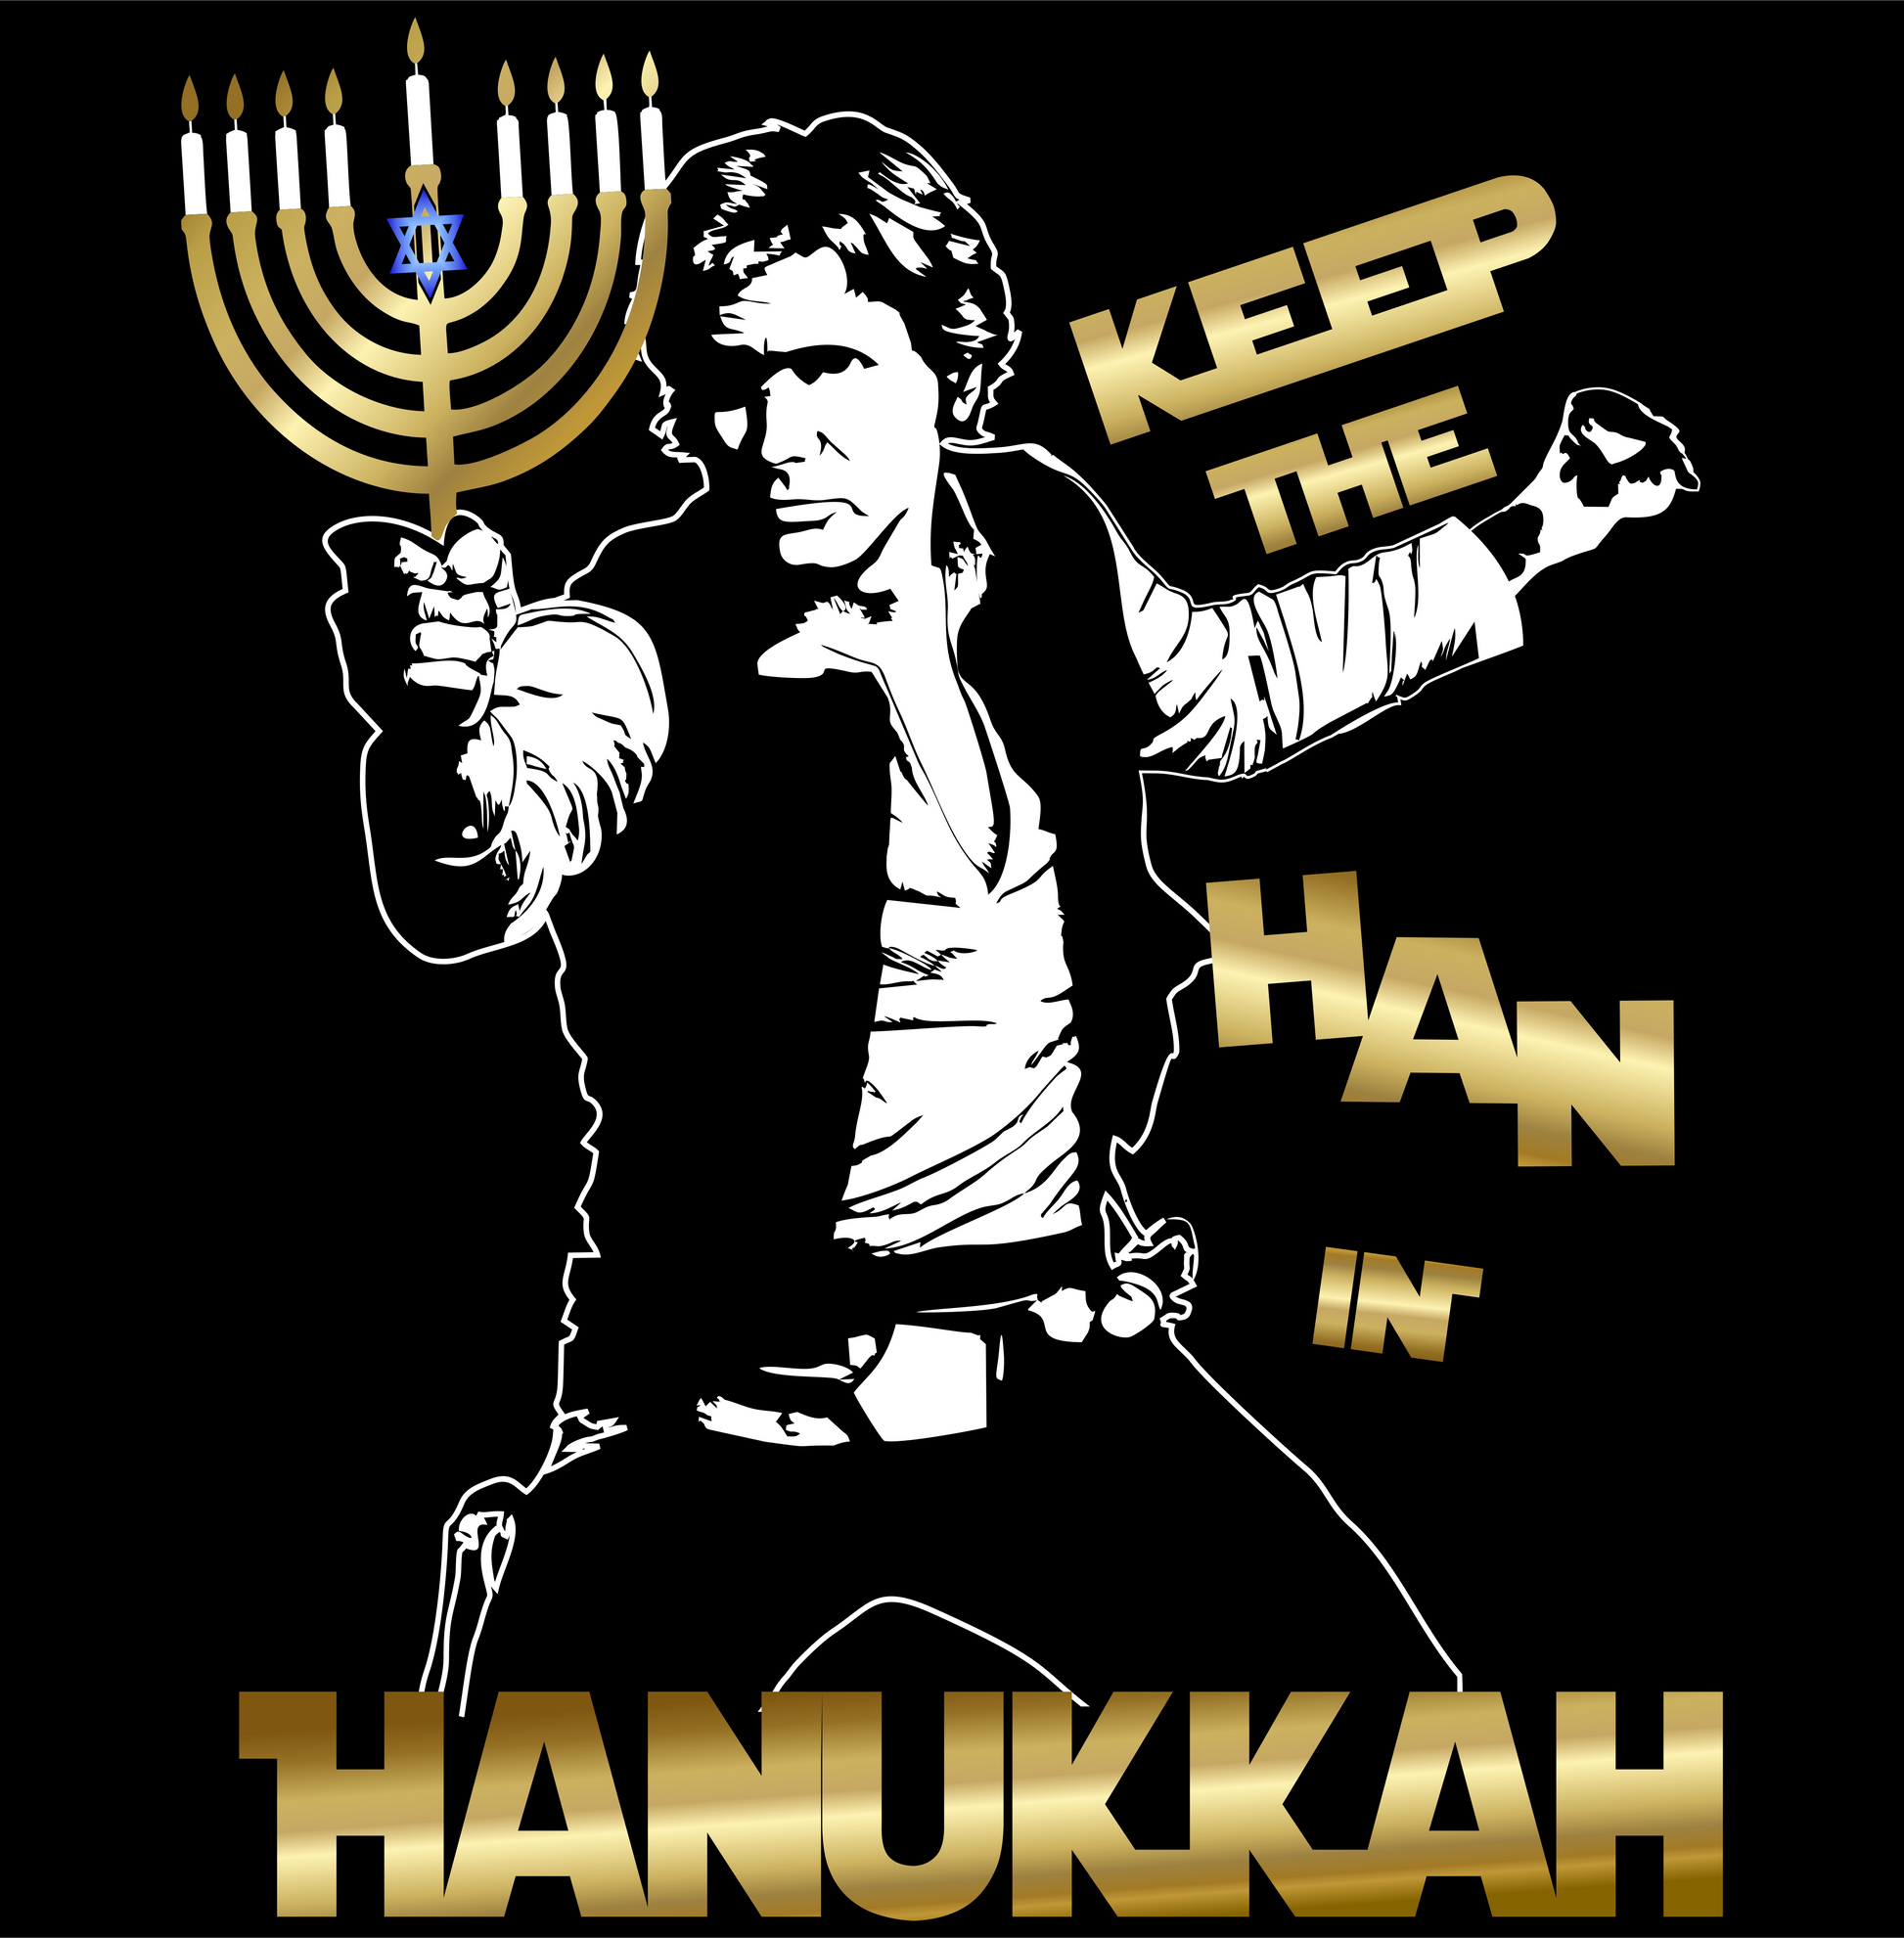 hanukkah keep the han in hanukkah DTG design graphic